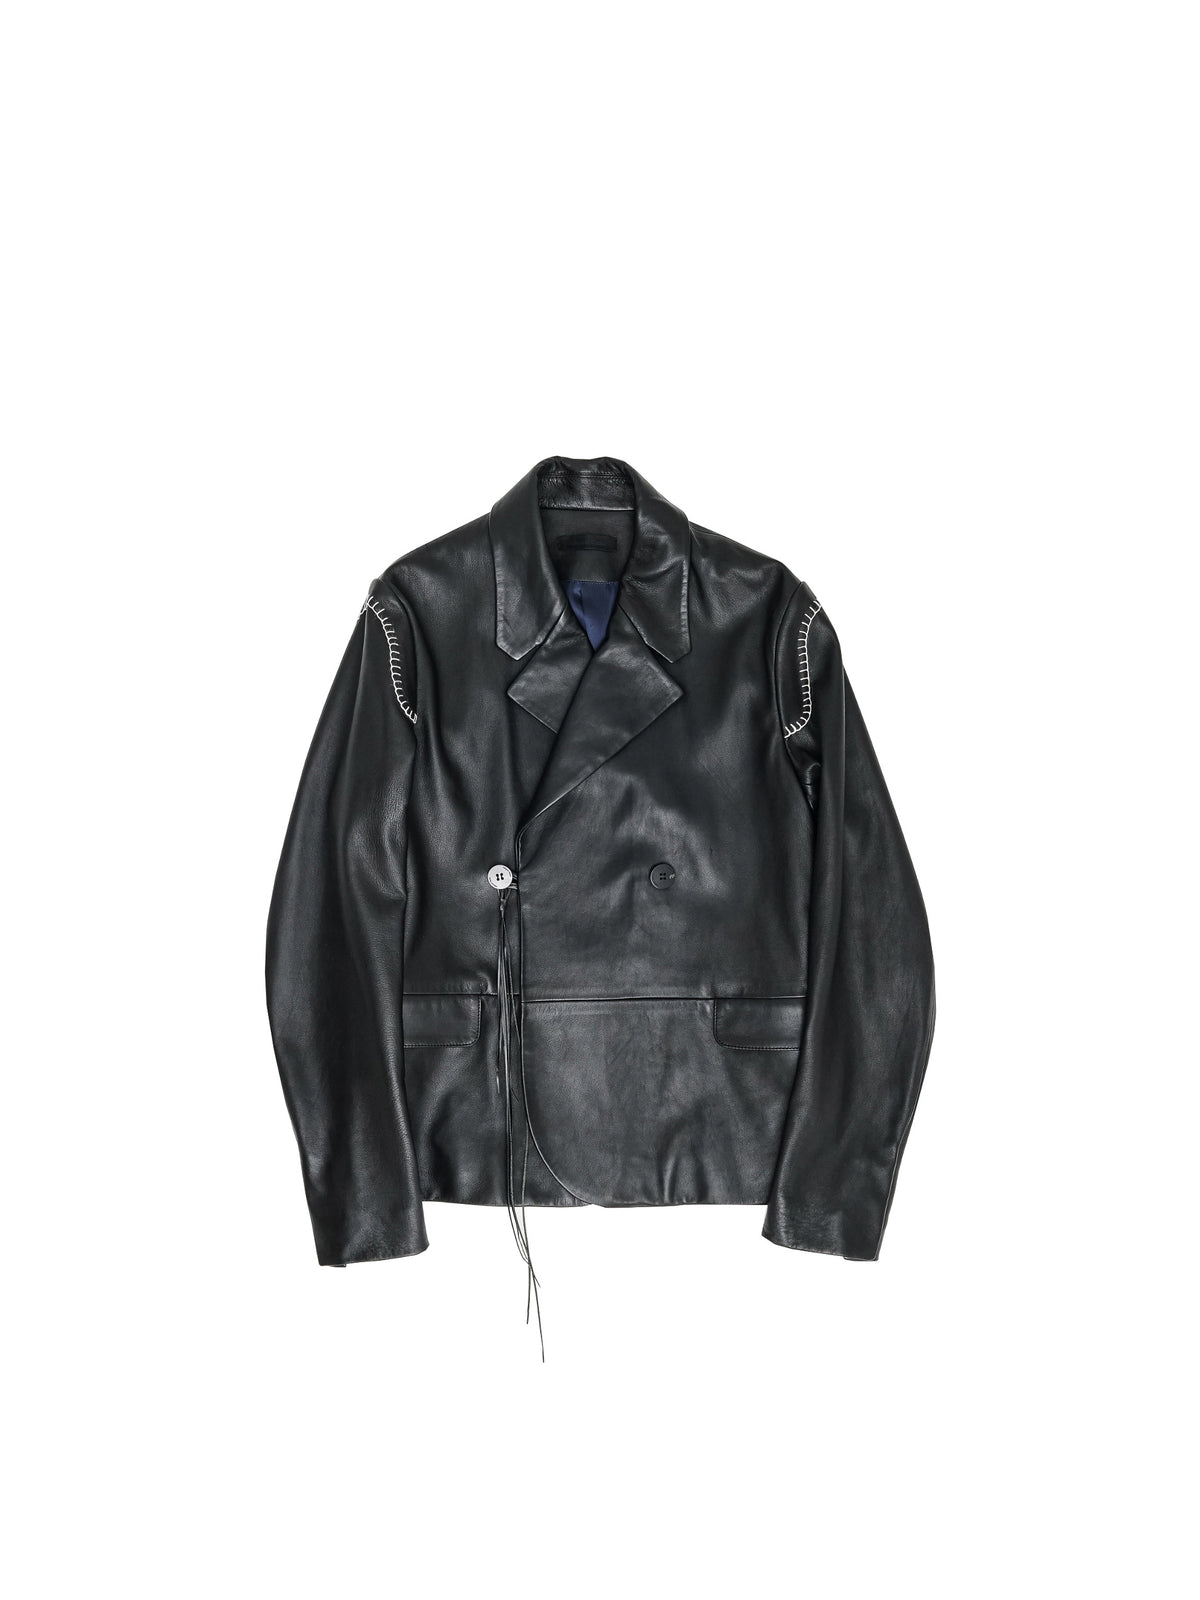 19600円格安 ショップ 超人気新品 TTT_MSW wool leather piping jacket